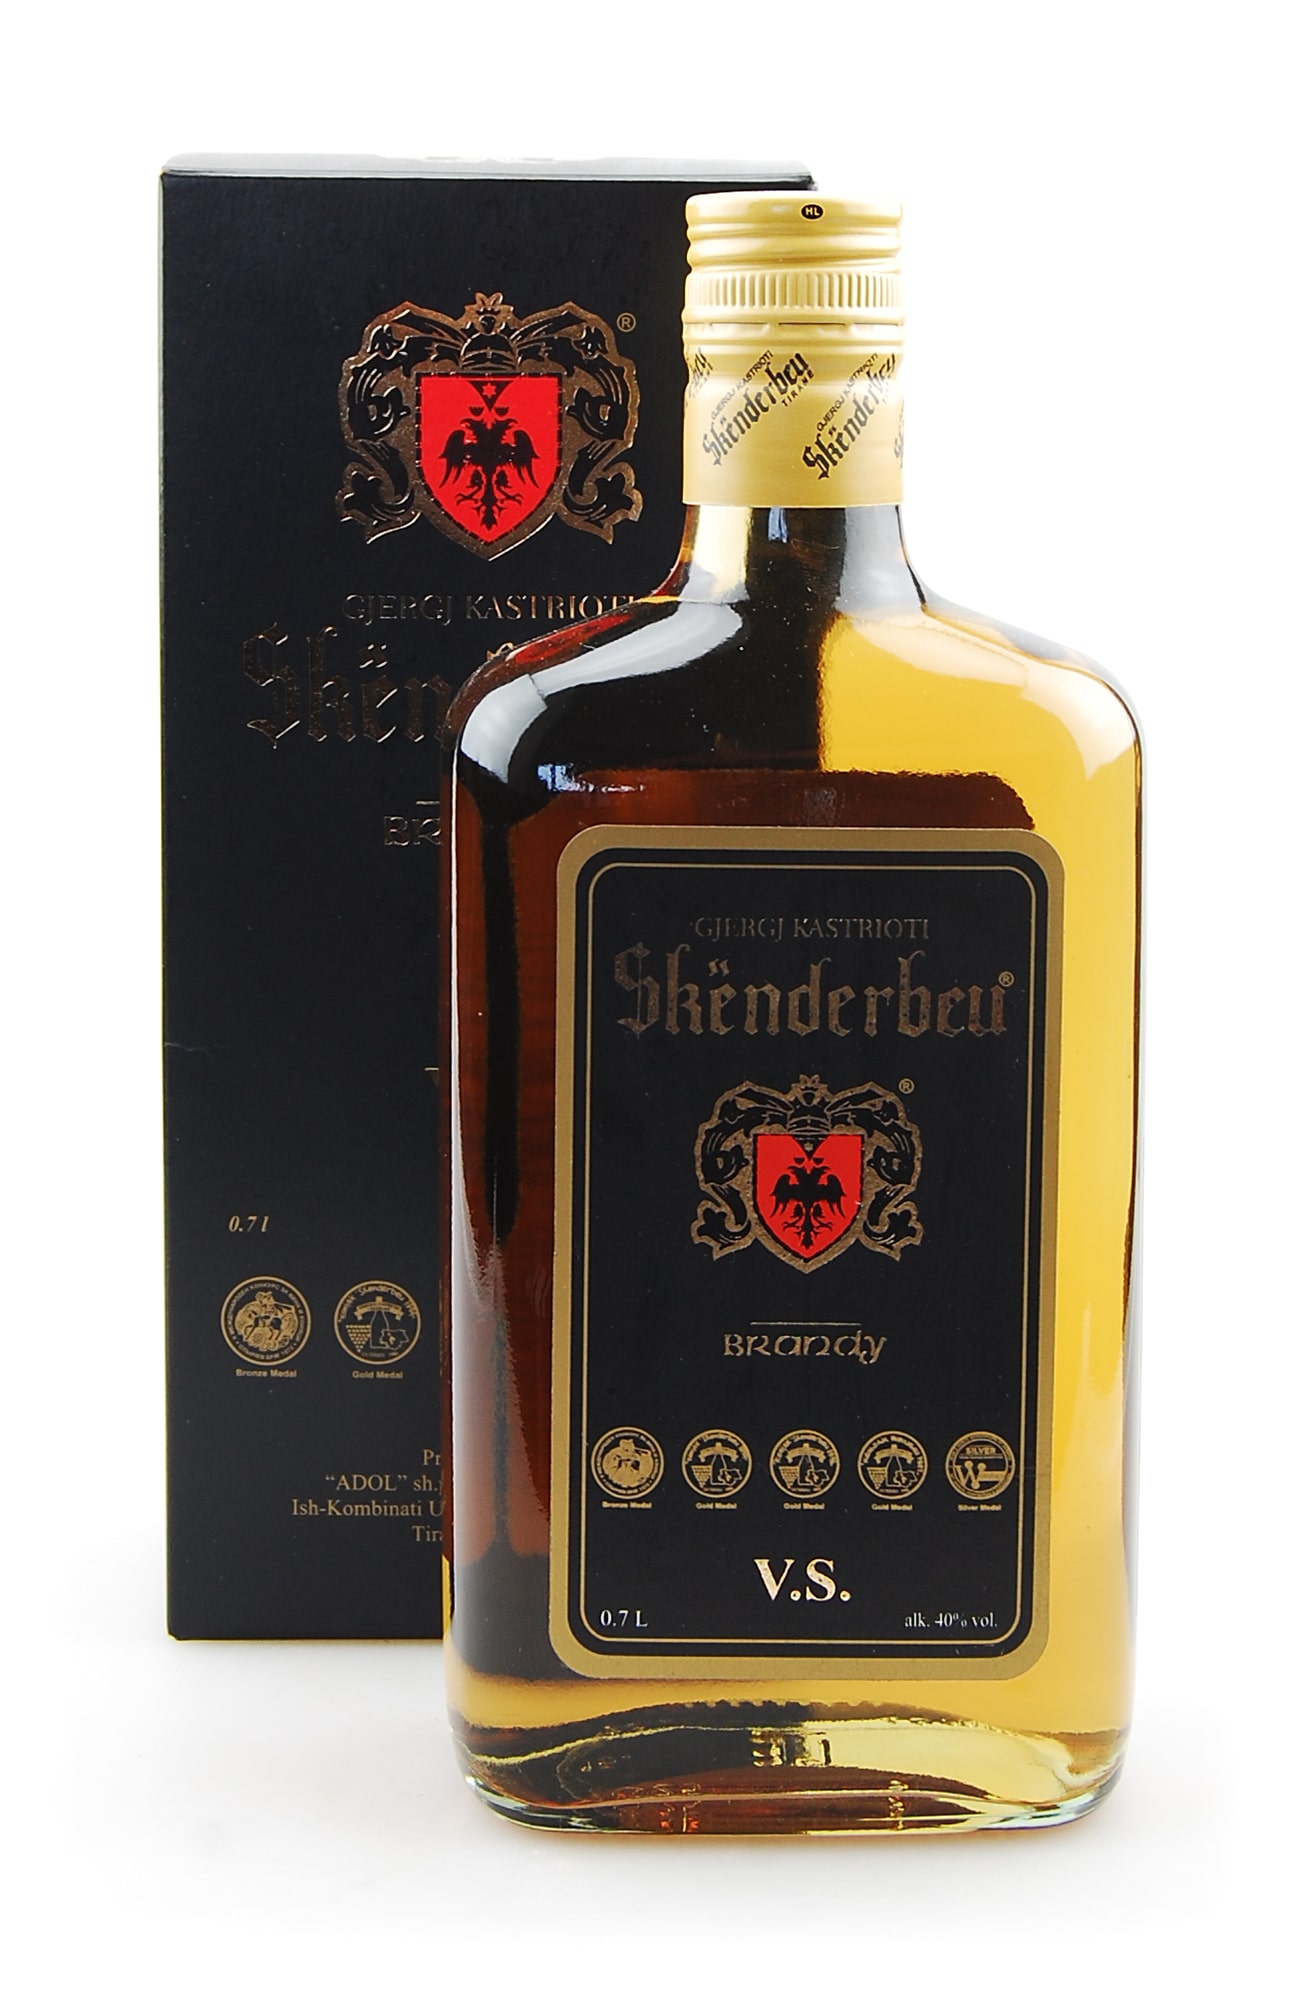 Самый знаменитый алкогольный бренд Албании